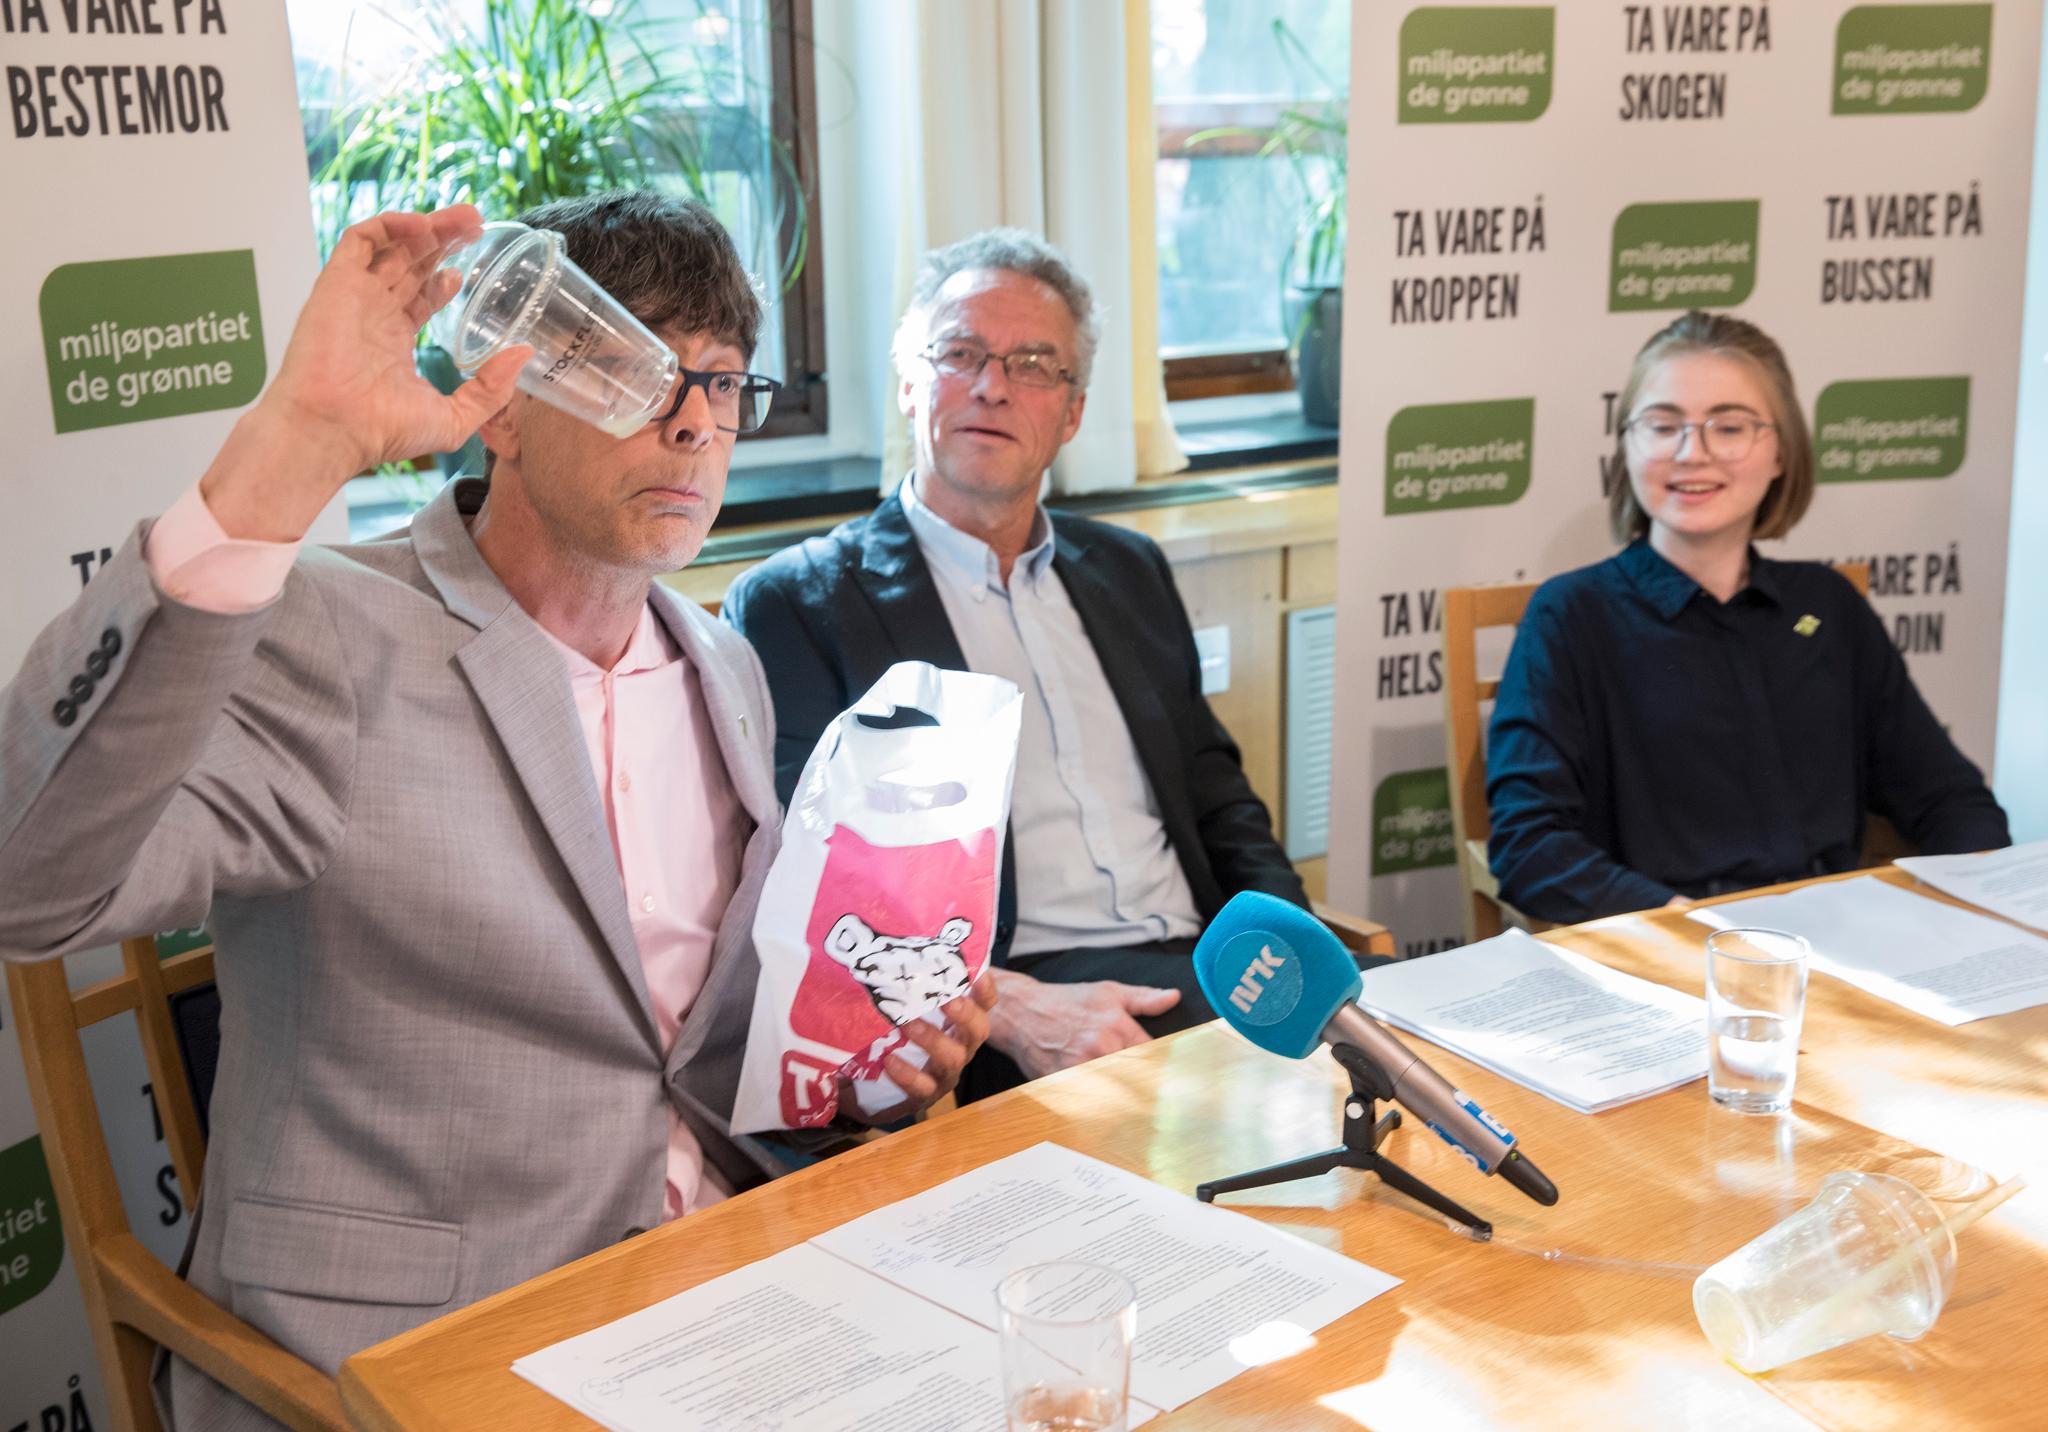 Grønn Ungdoms Hulda Holtvedt har fått med seg Rasmus Hansson i kampen om å åpne for hasj i butikk. Per Espen Stoknes håper på flertall for forbud mot engangsplast. 